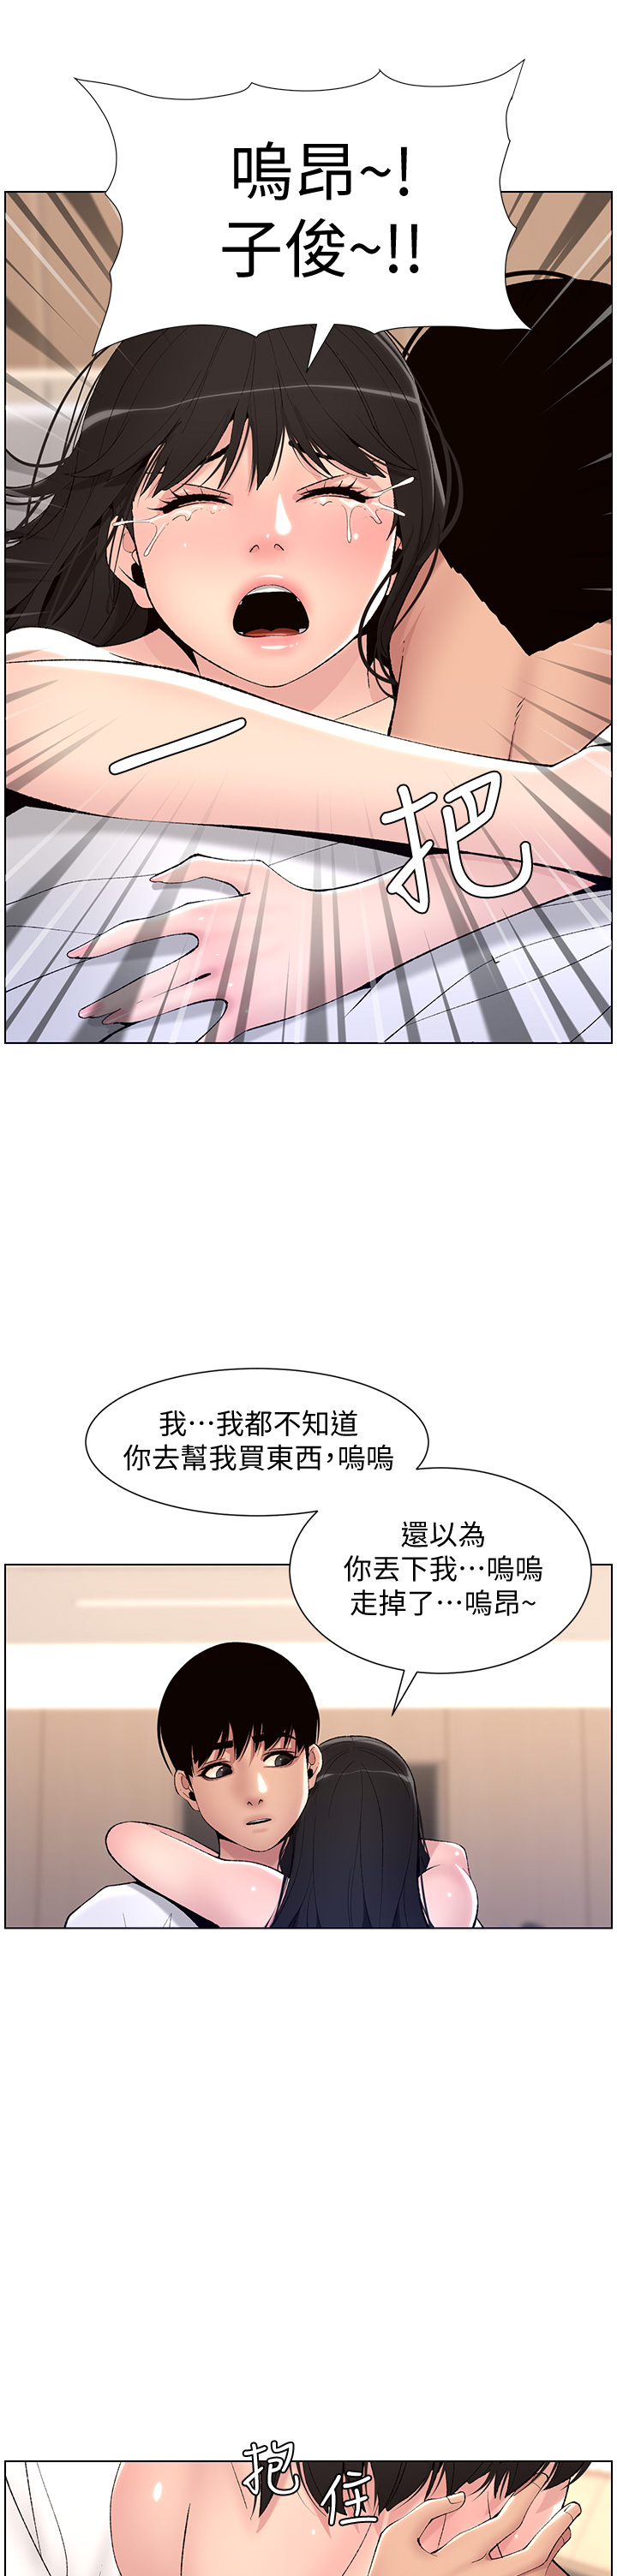 韩国污漫画 帝王App 第11话 少女的第一次高潮 31